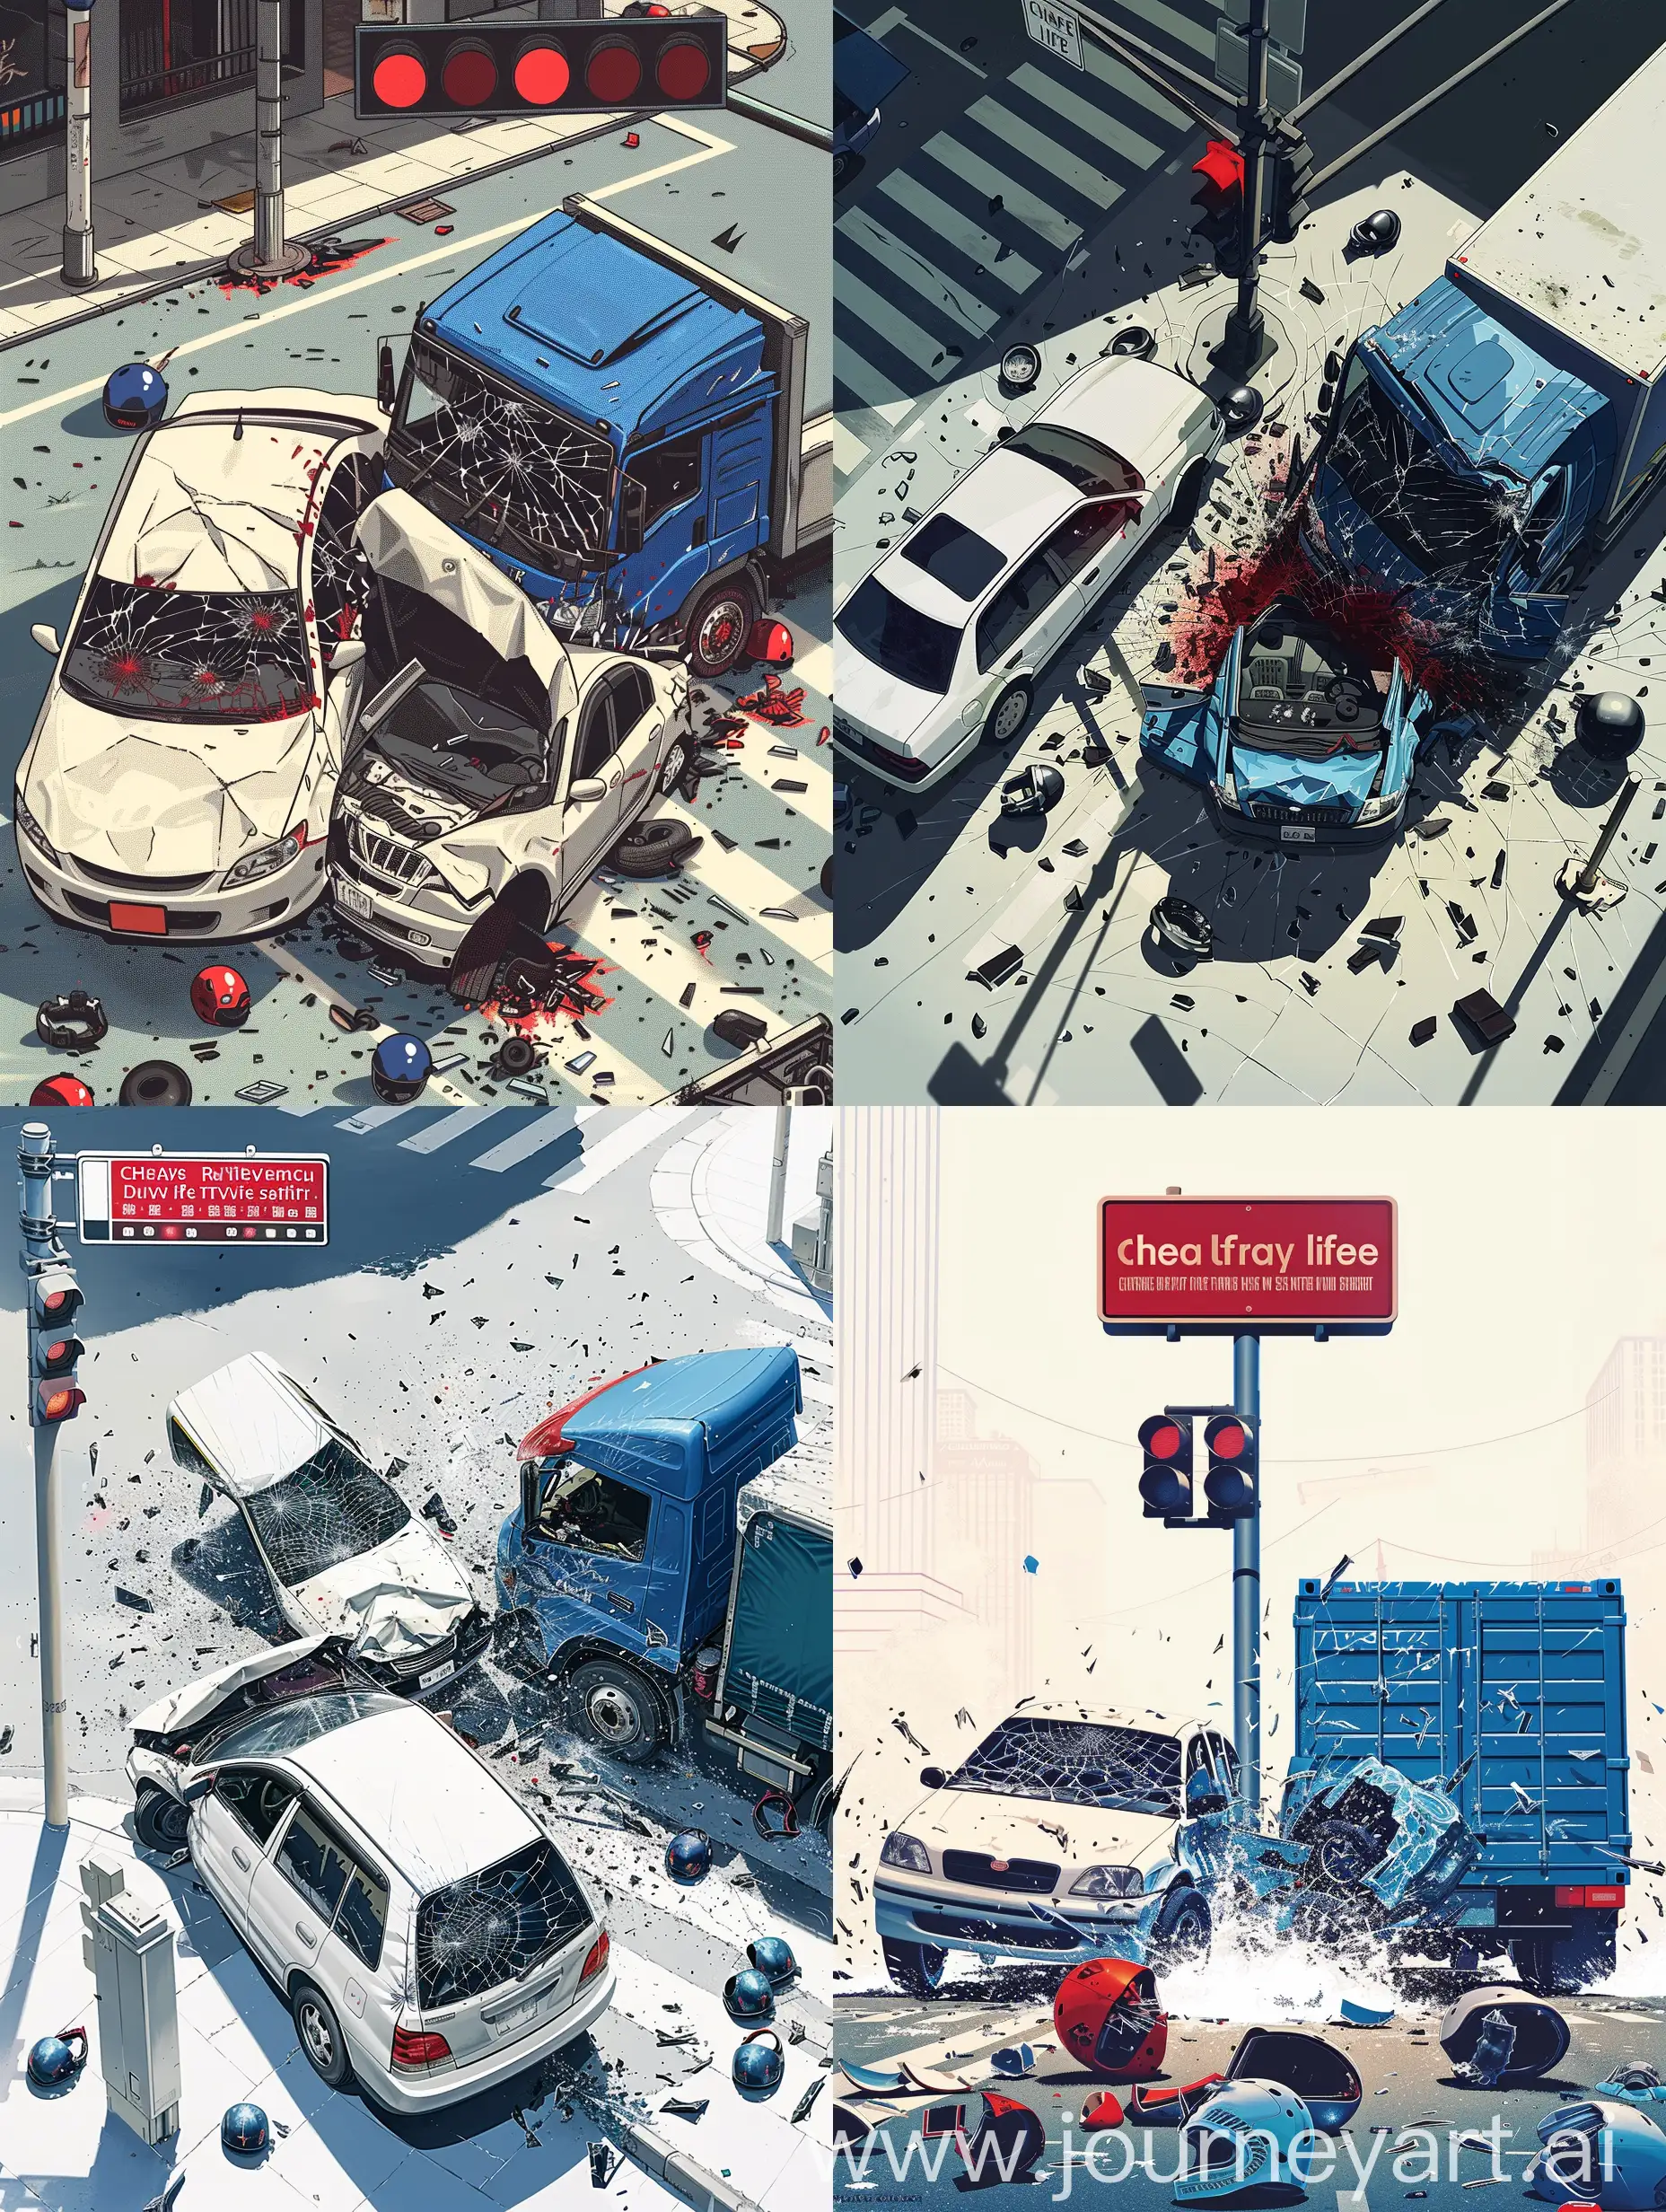 画面中央是一辆白色轿车与一辆蓝色货车在十字路口相撞的瞬间，强烈的冲击力使得车辆变形，碎片飞溅，营造出紧张而又震撼的氛围。周围环境以冷色调渲染，强化事故现场的冰冷与严峻。背景中，交通信号灯恰巧呈现红色，象征着悲剧源于未能遵守交通规则。画面一角，有残破的安全帽散落，暗示事故可能导致的严重后果。画面上方，配有一句醒目的标语：“珍爱生命，安全驾驶”。整幅画面以此生动直观的方式警醒每一位驾驶员重视交通安全。